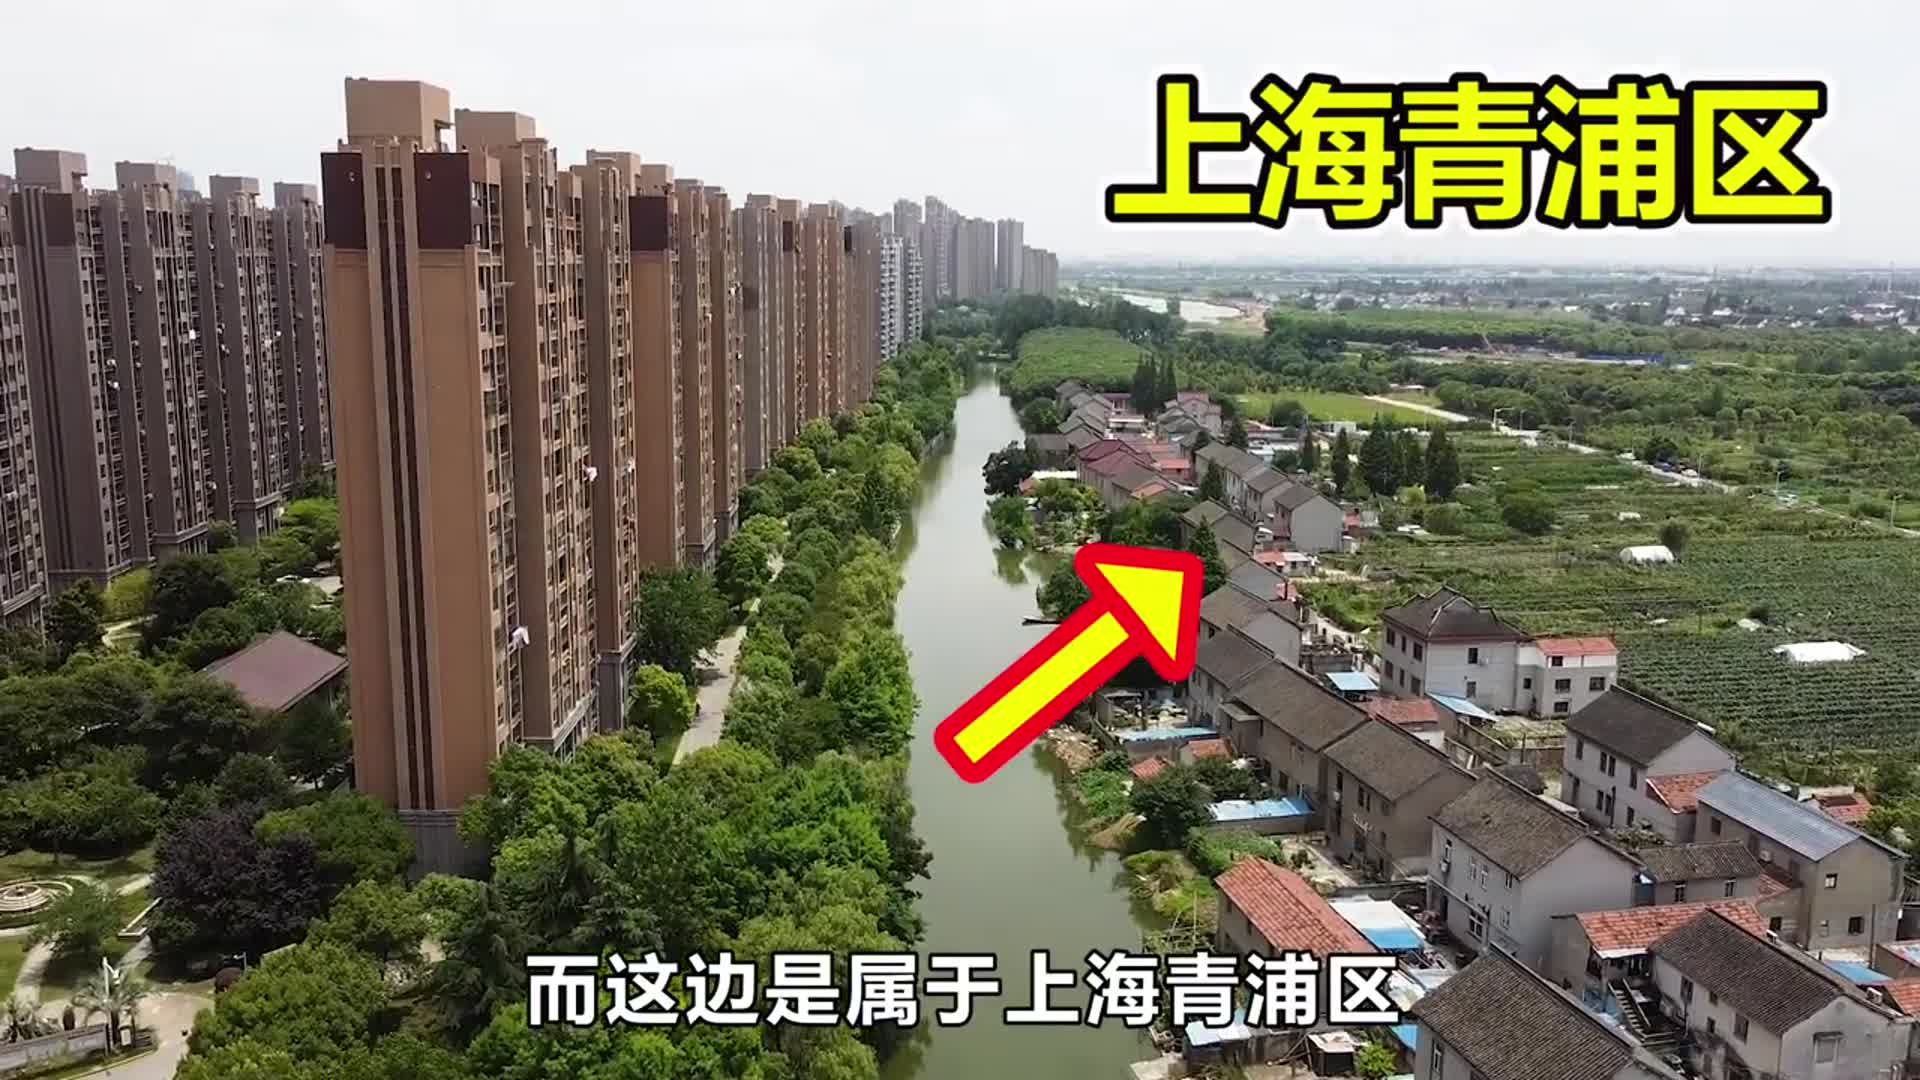 上海江苏交界处图片图片